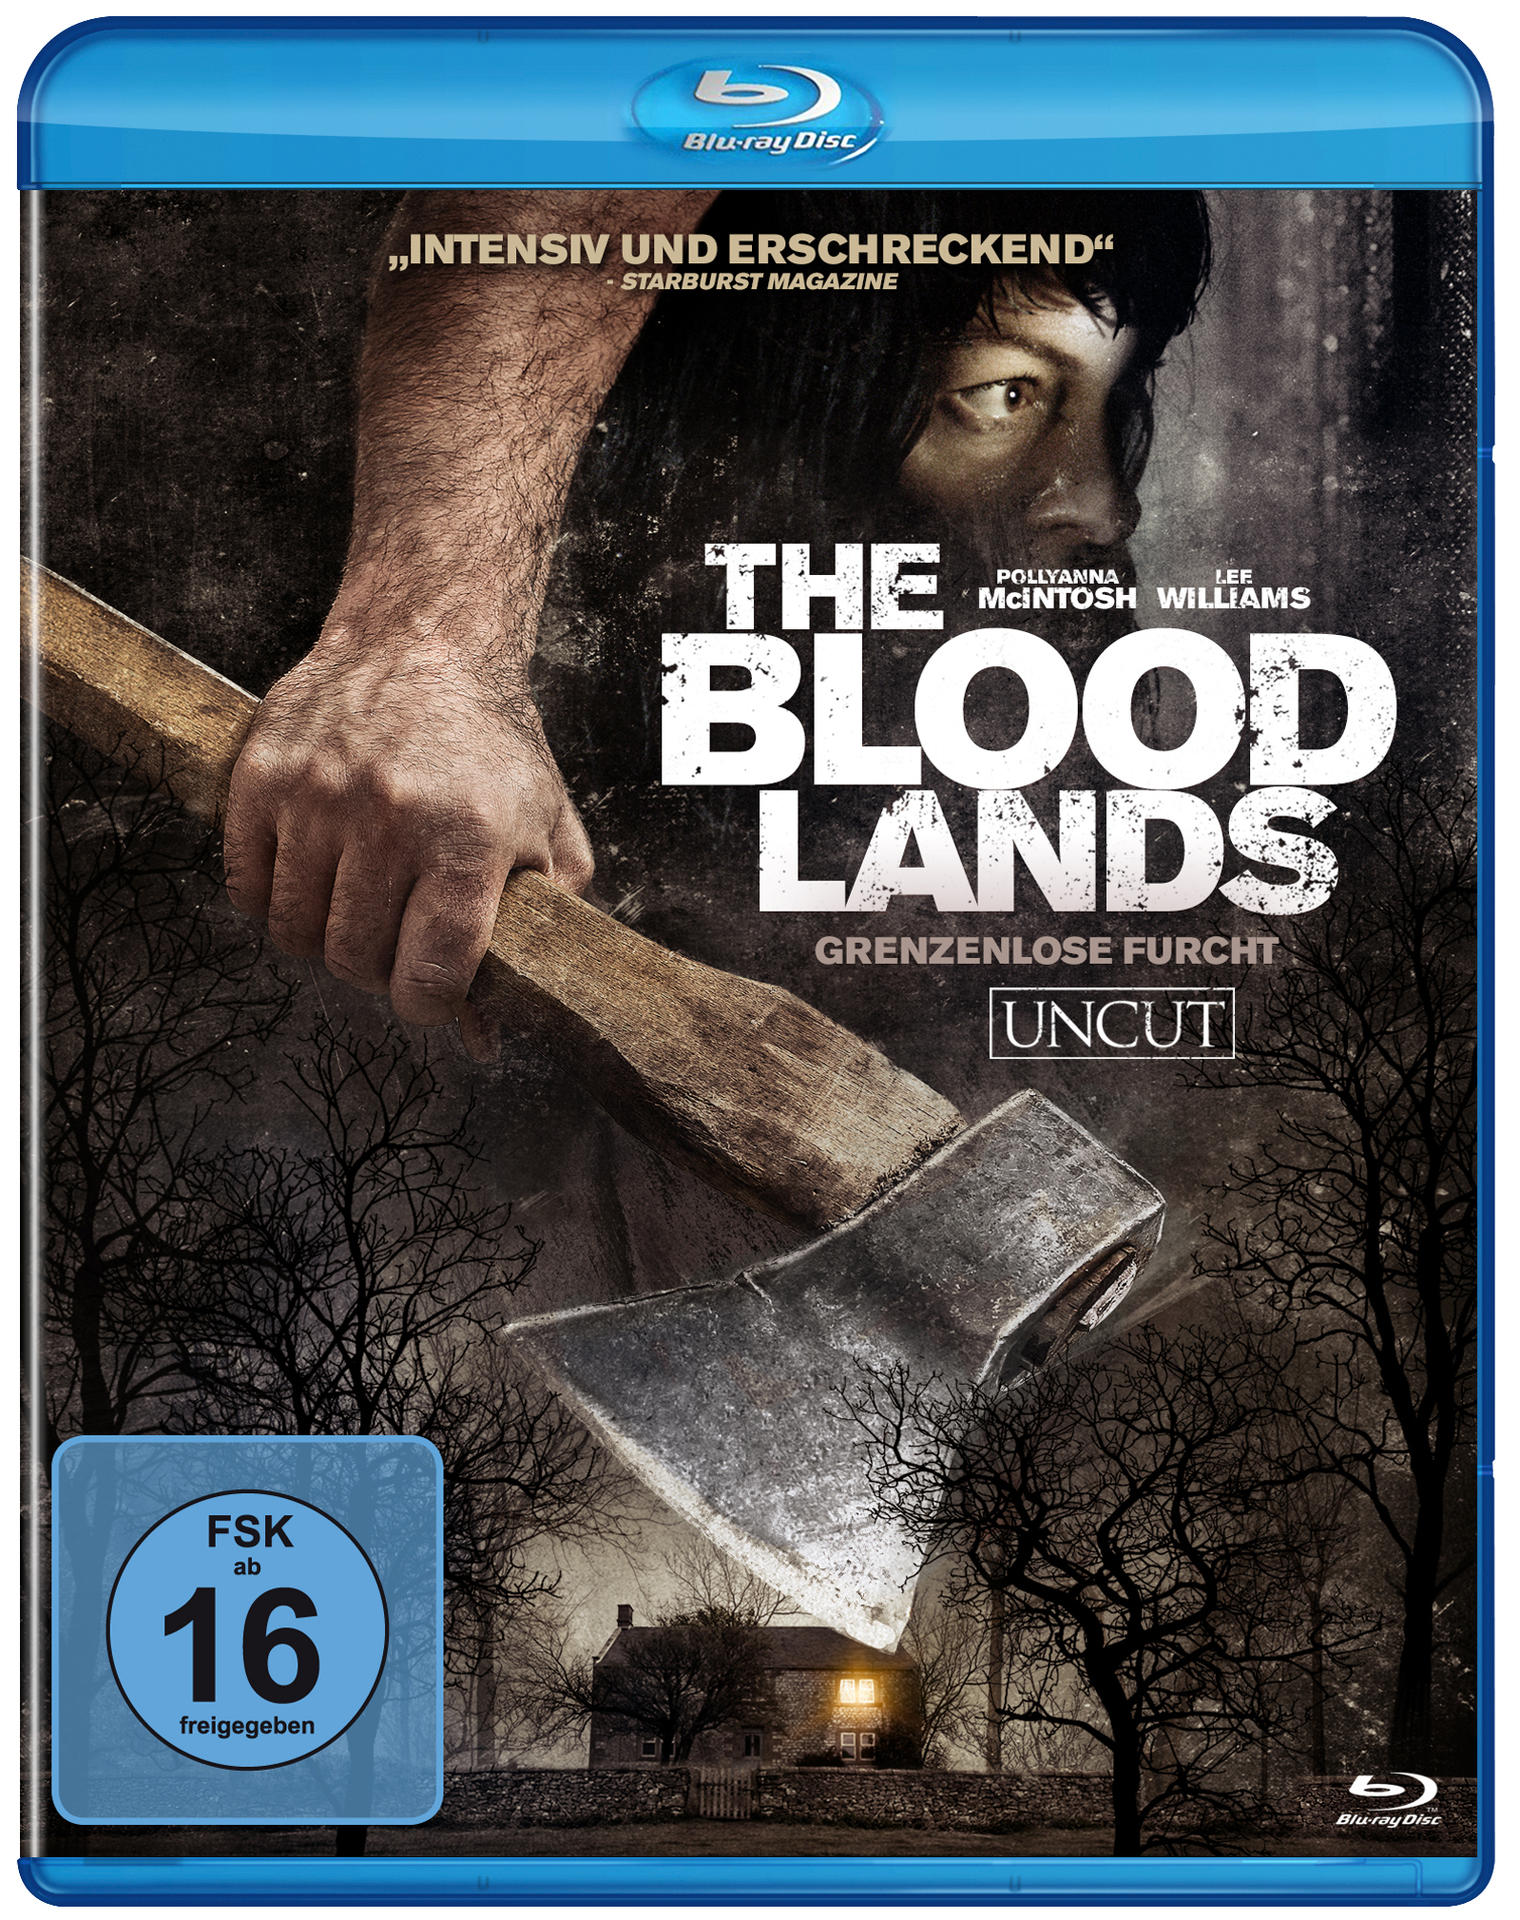 The Blu-ray Lands-Grenzenlose Blood Furcht